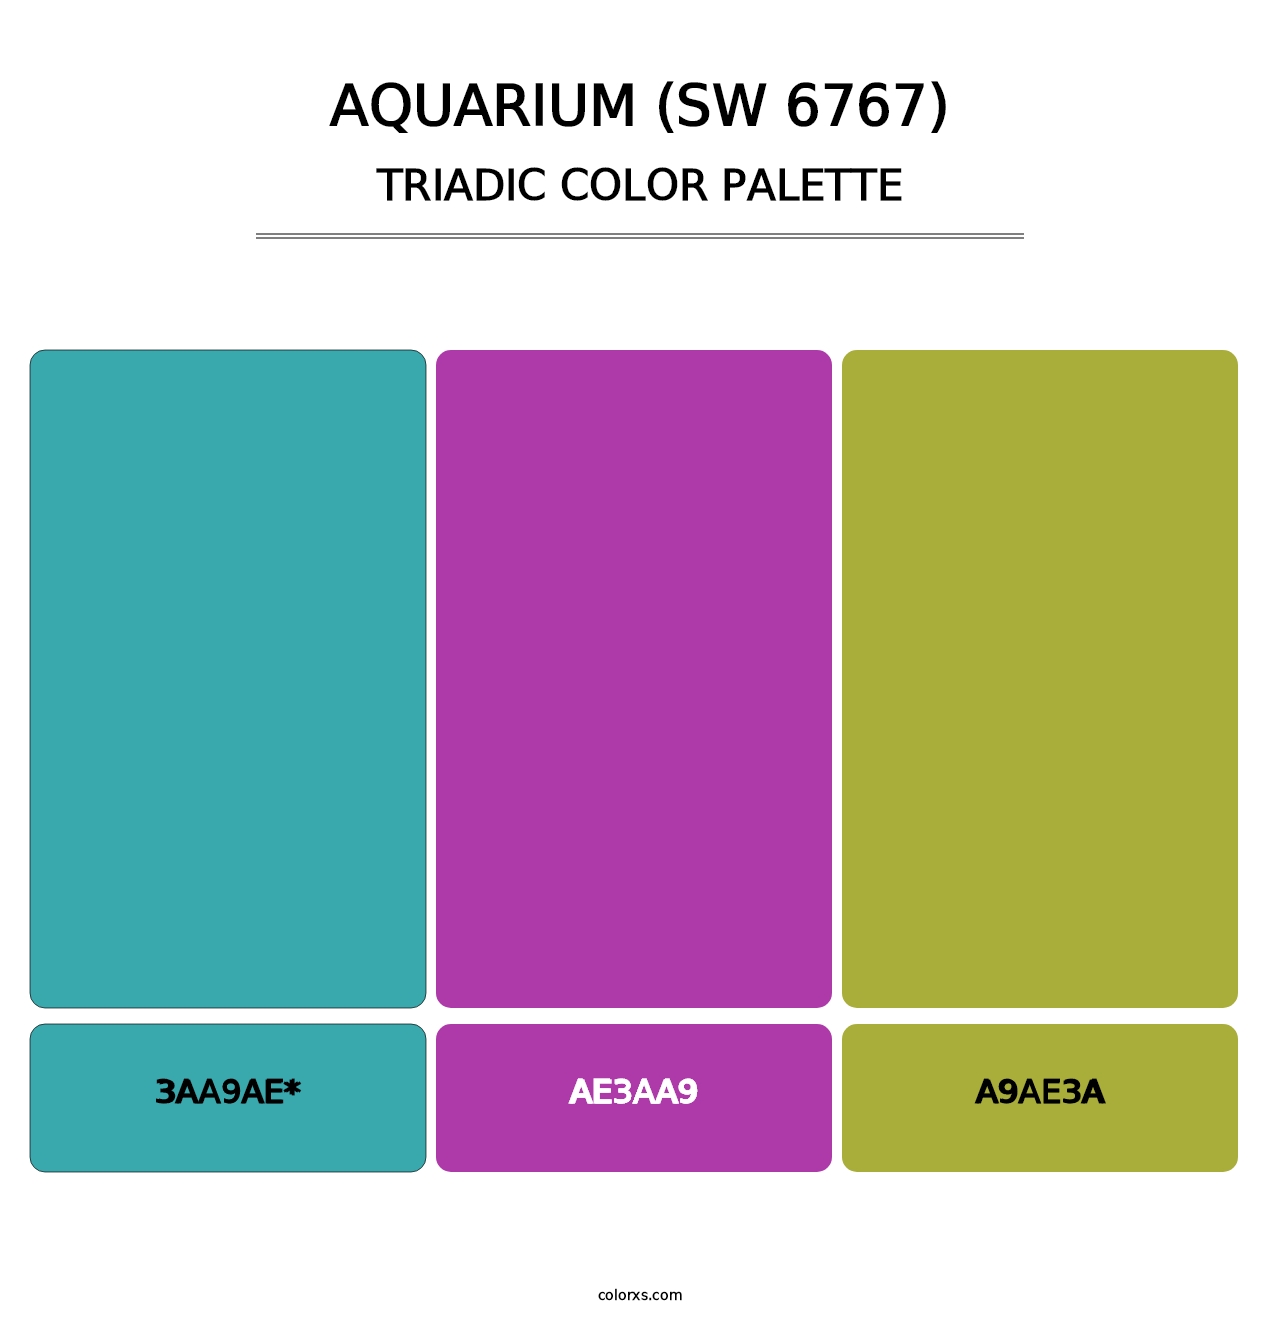 Aquarium (SW 6767) - Triadic Color Palette